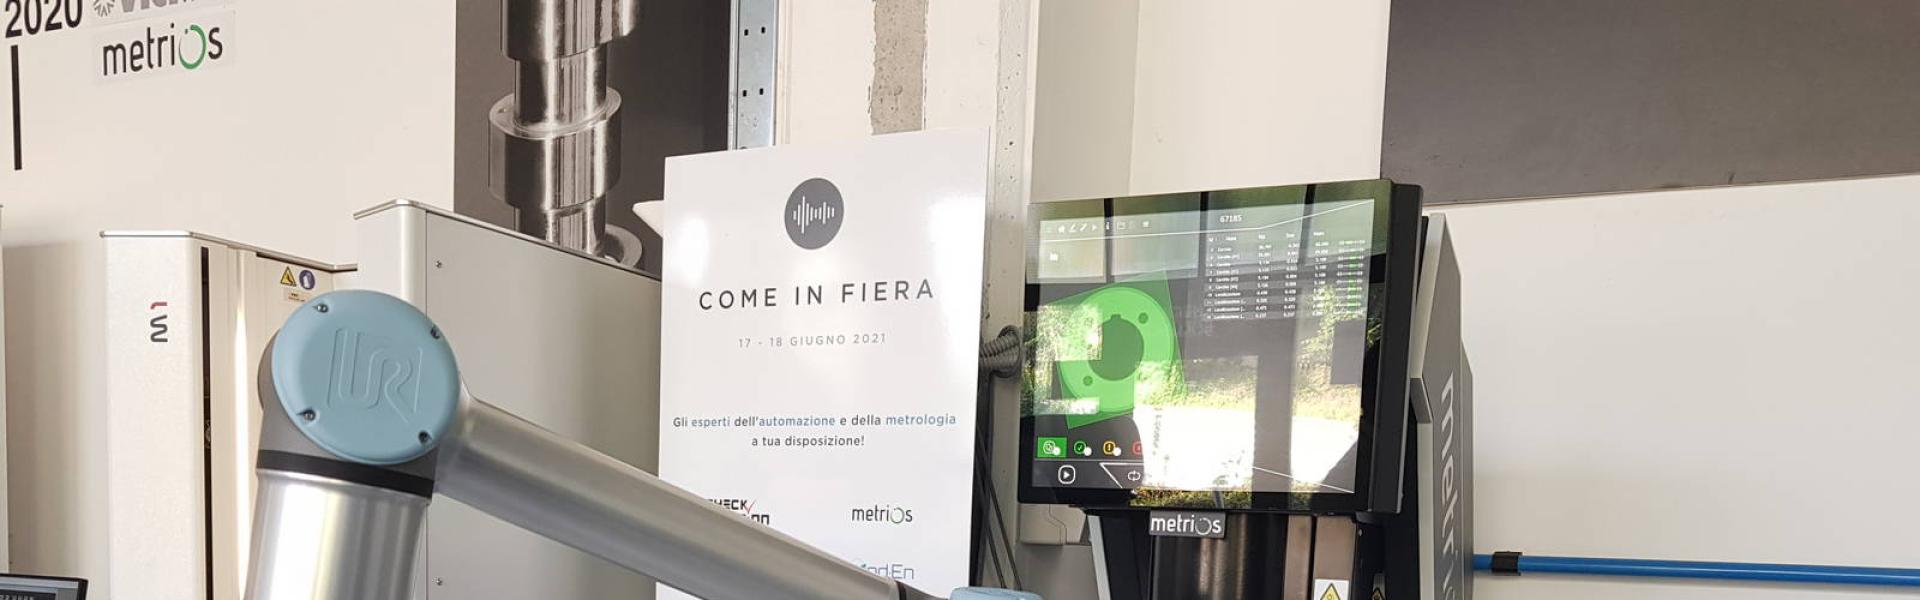 Open House COME IN FIERA 2021 - Turin, Italia